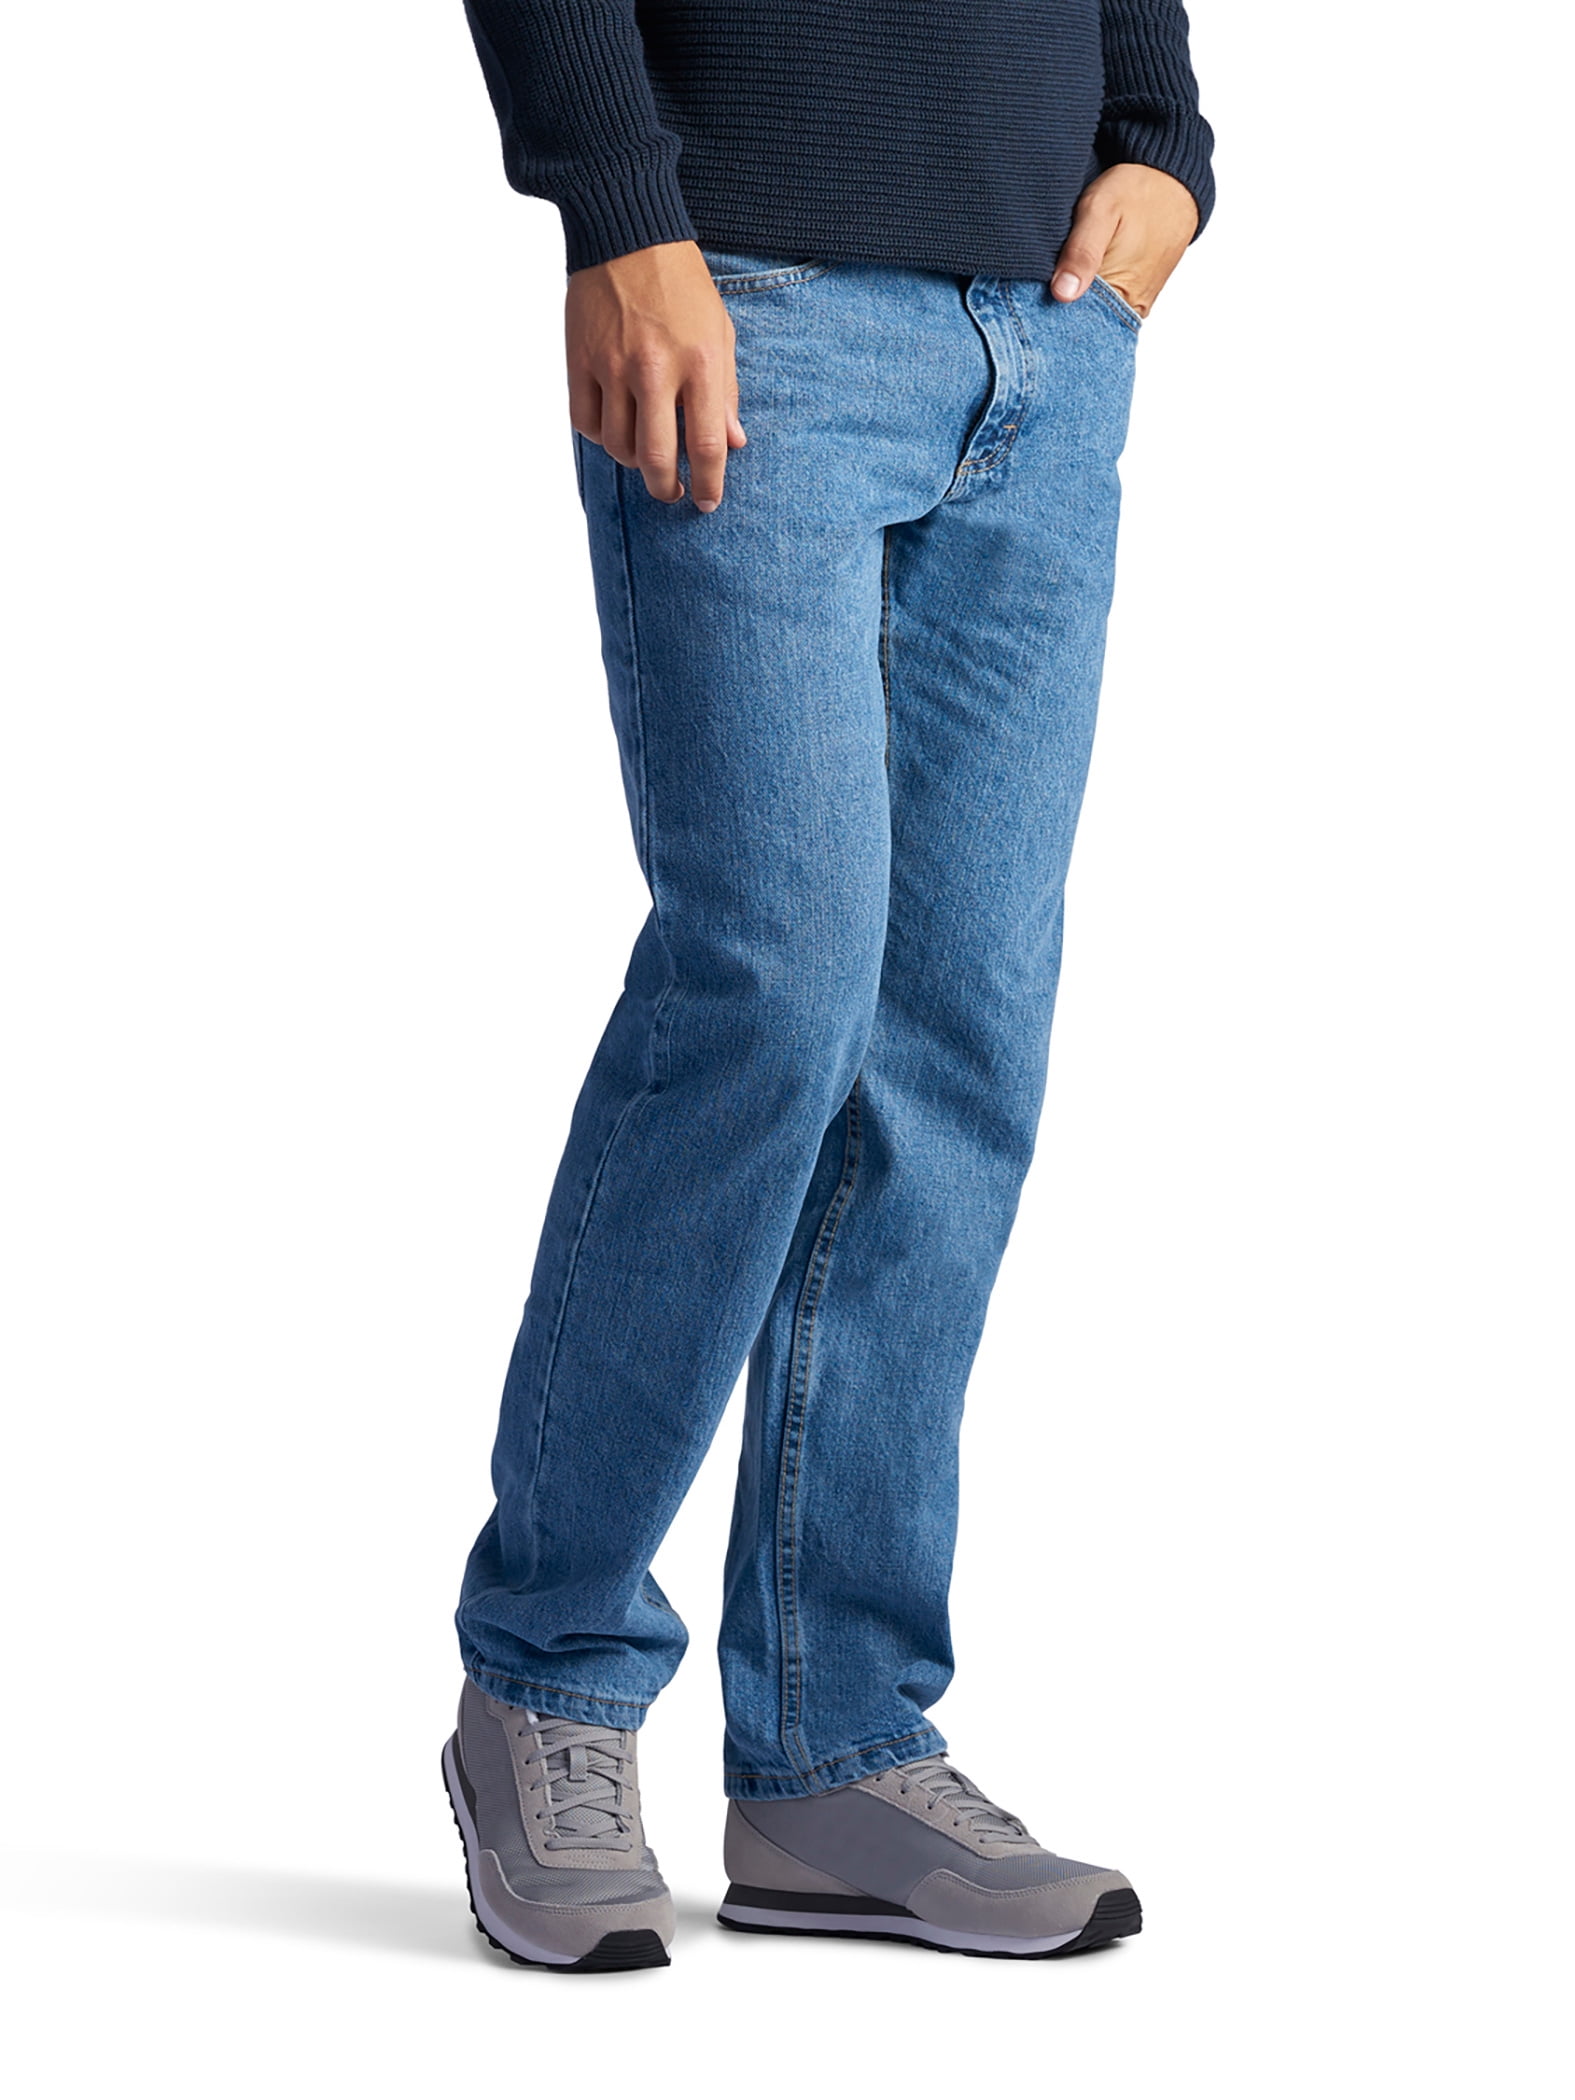 lee jeans walmart